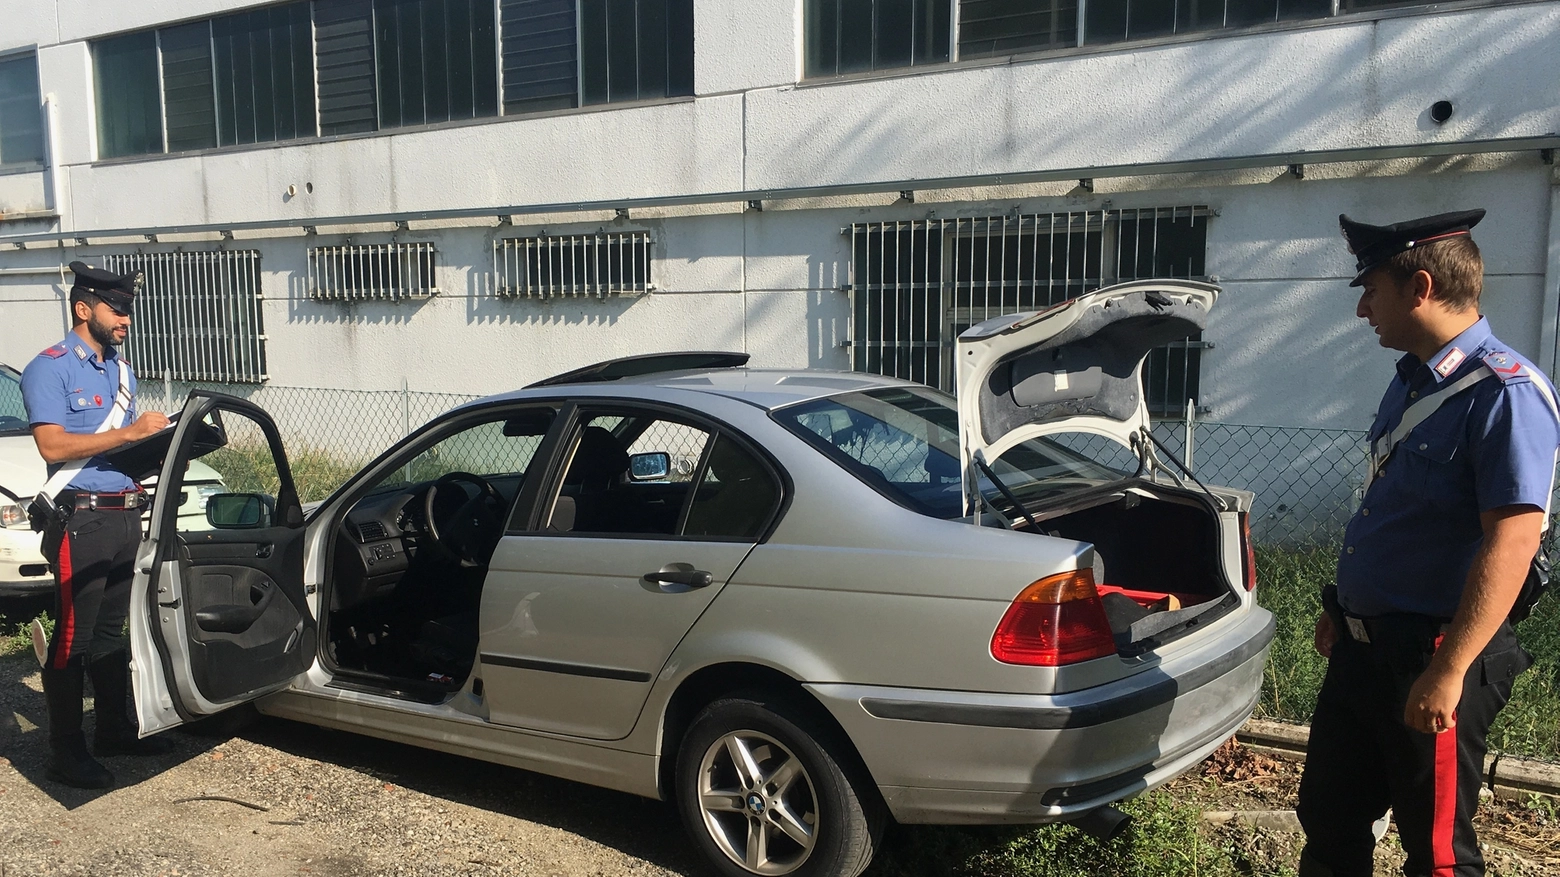 San Pietro in casale, esplosione nell'auto a metano: ferita una donna